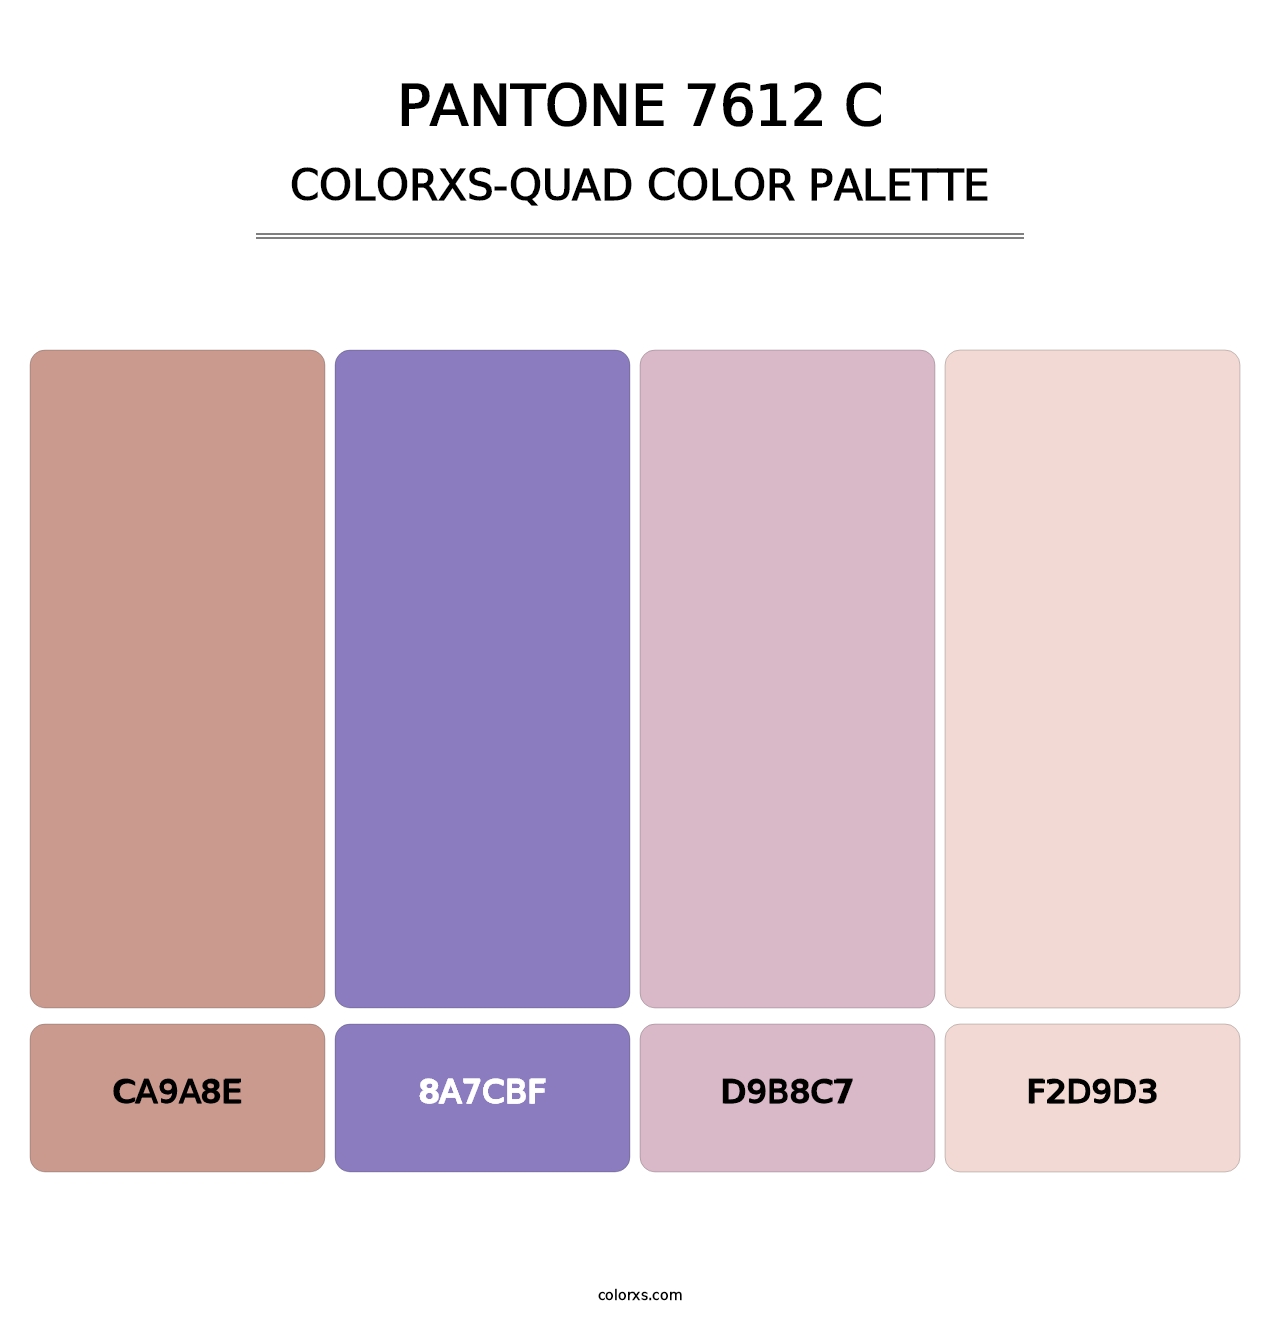 PANTONE 7612 C - Colorxs Quad Palette